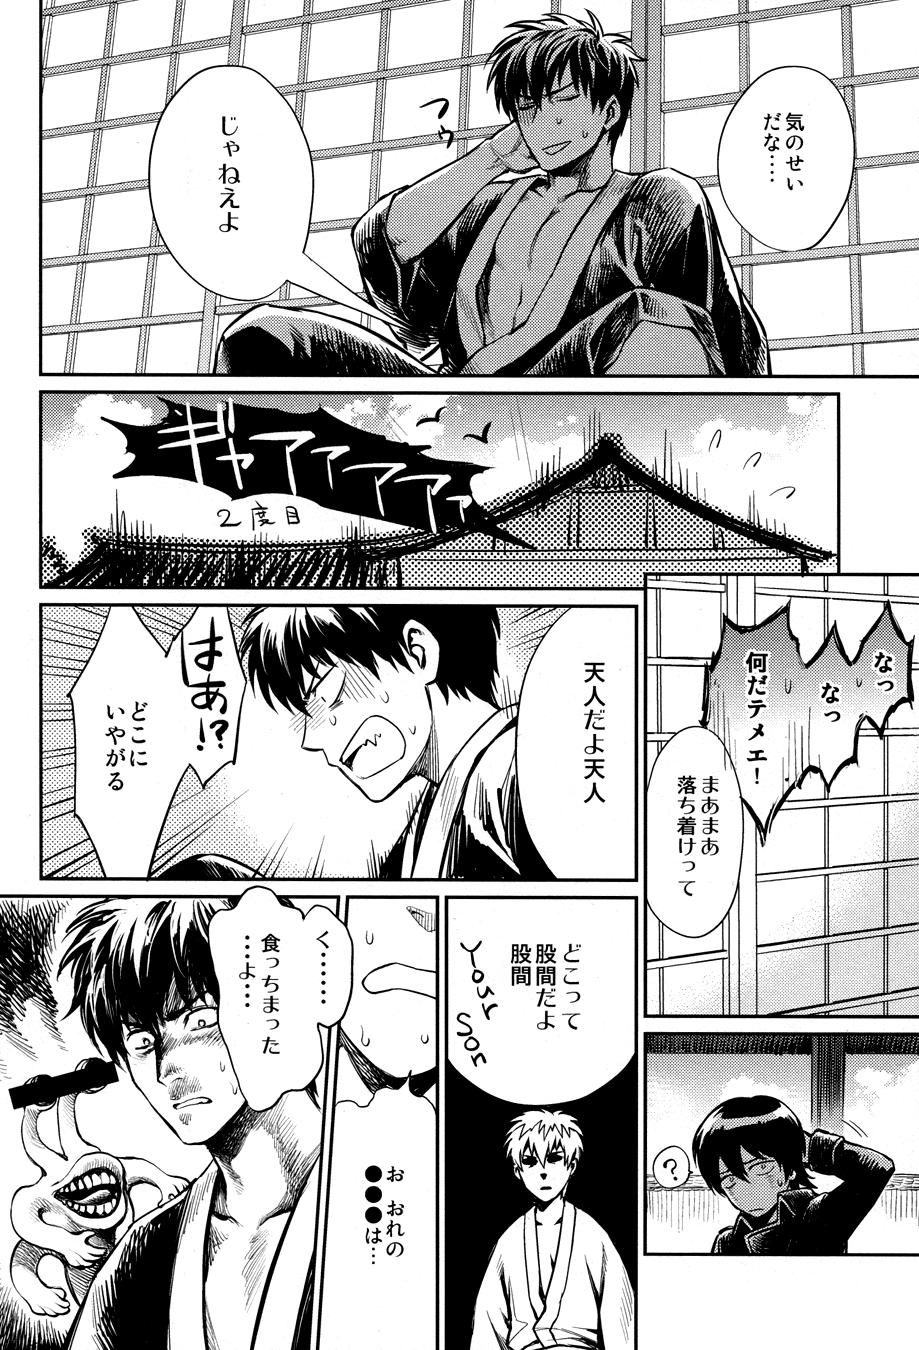 Mamada No Talking Man - Gintama Strip - Page 10